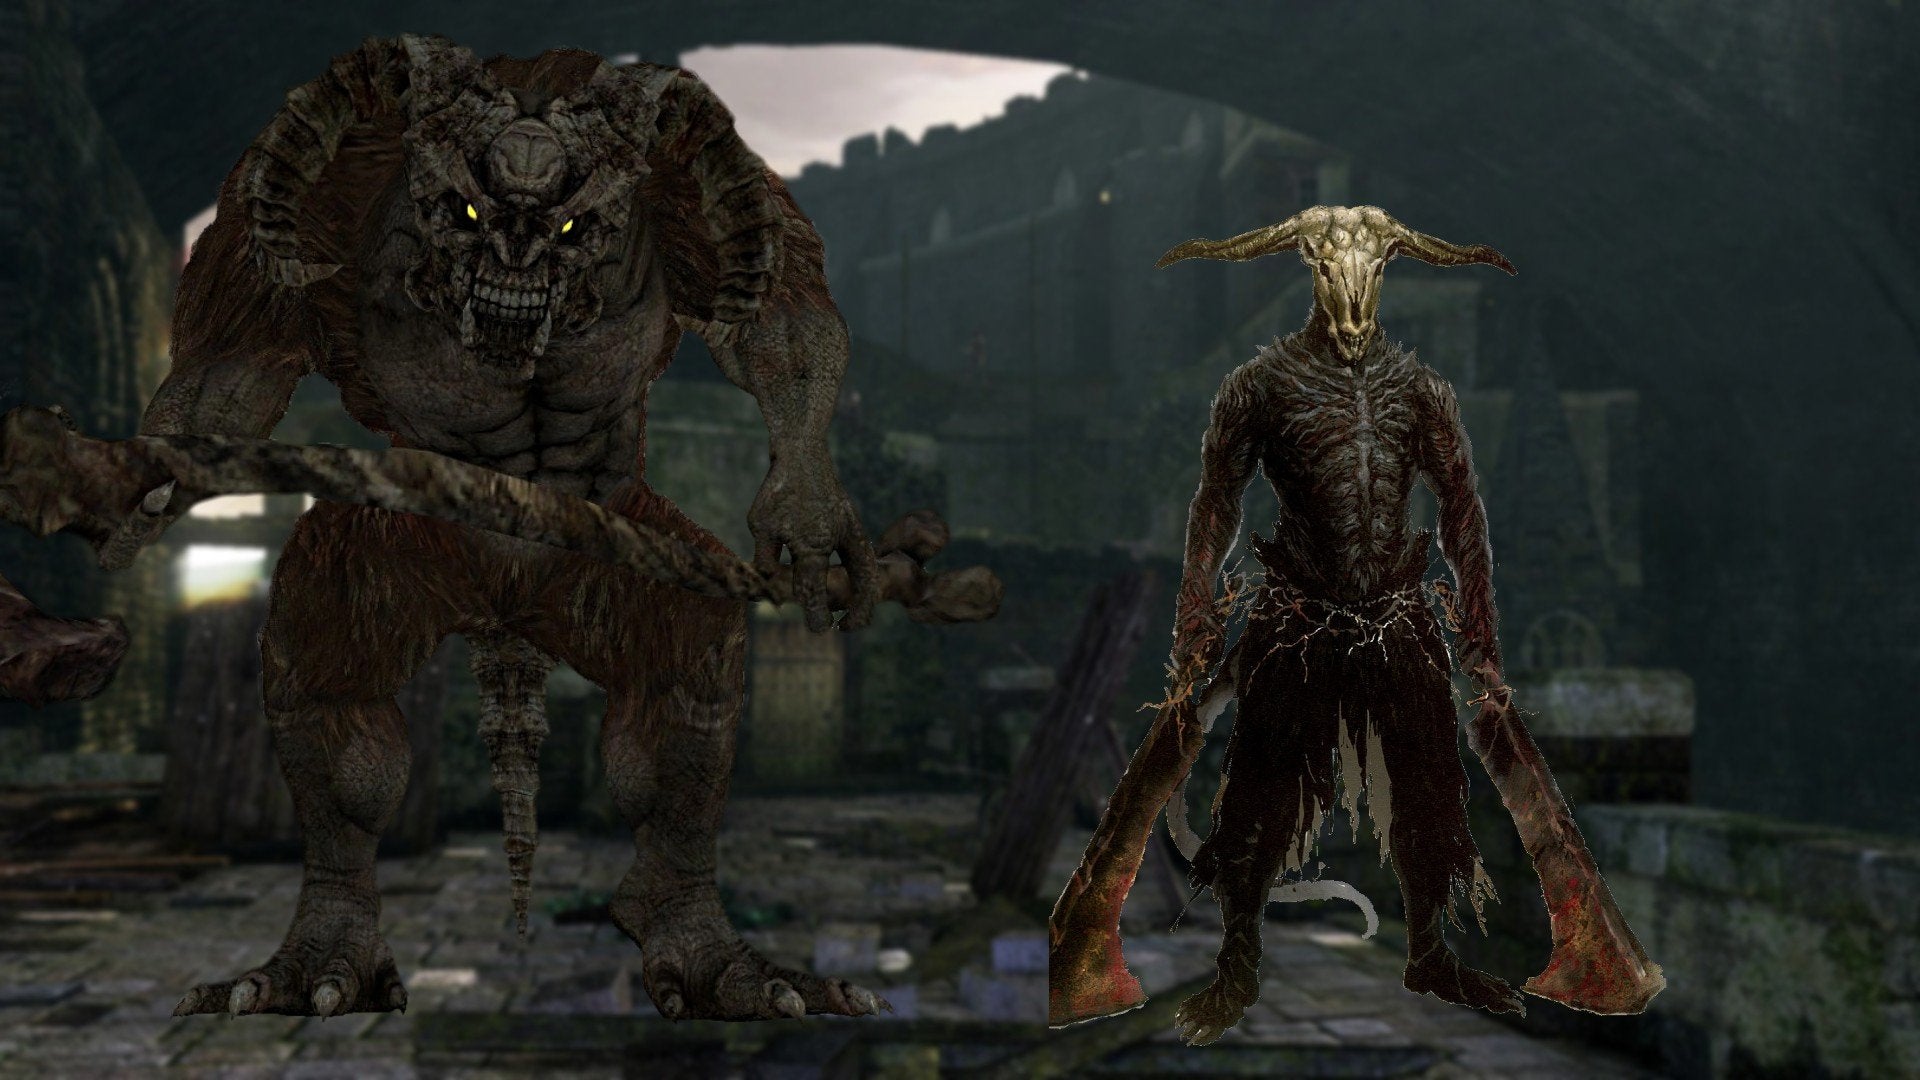 The Taurus Demon and Capra Demon from Dark Souls.